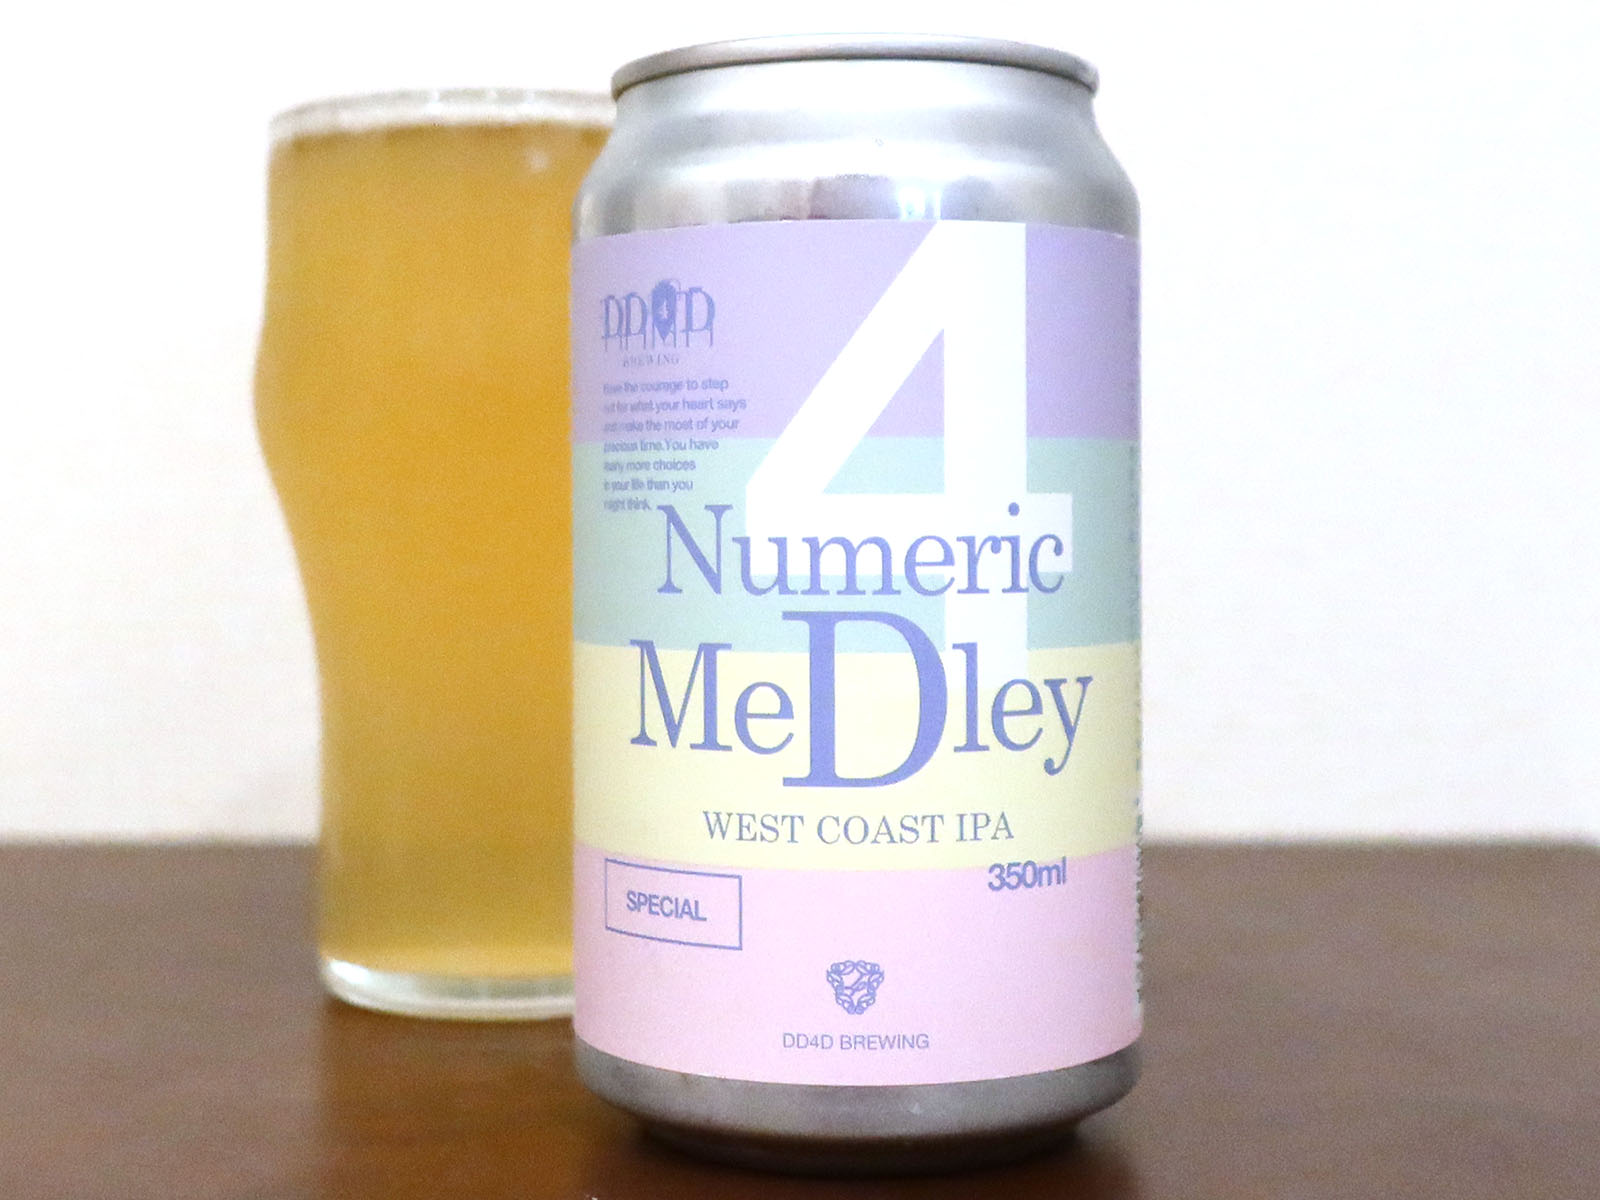 DD4D Brewing Numeric Medley